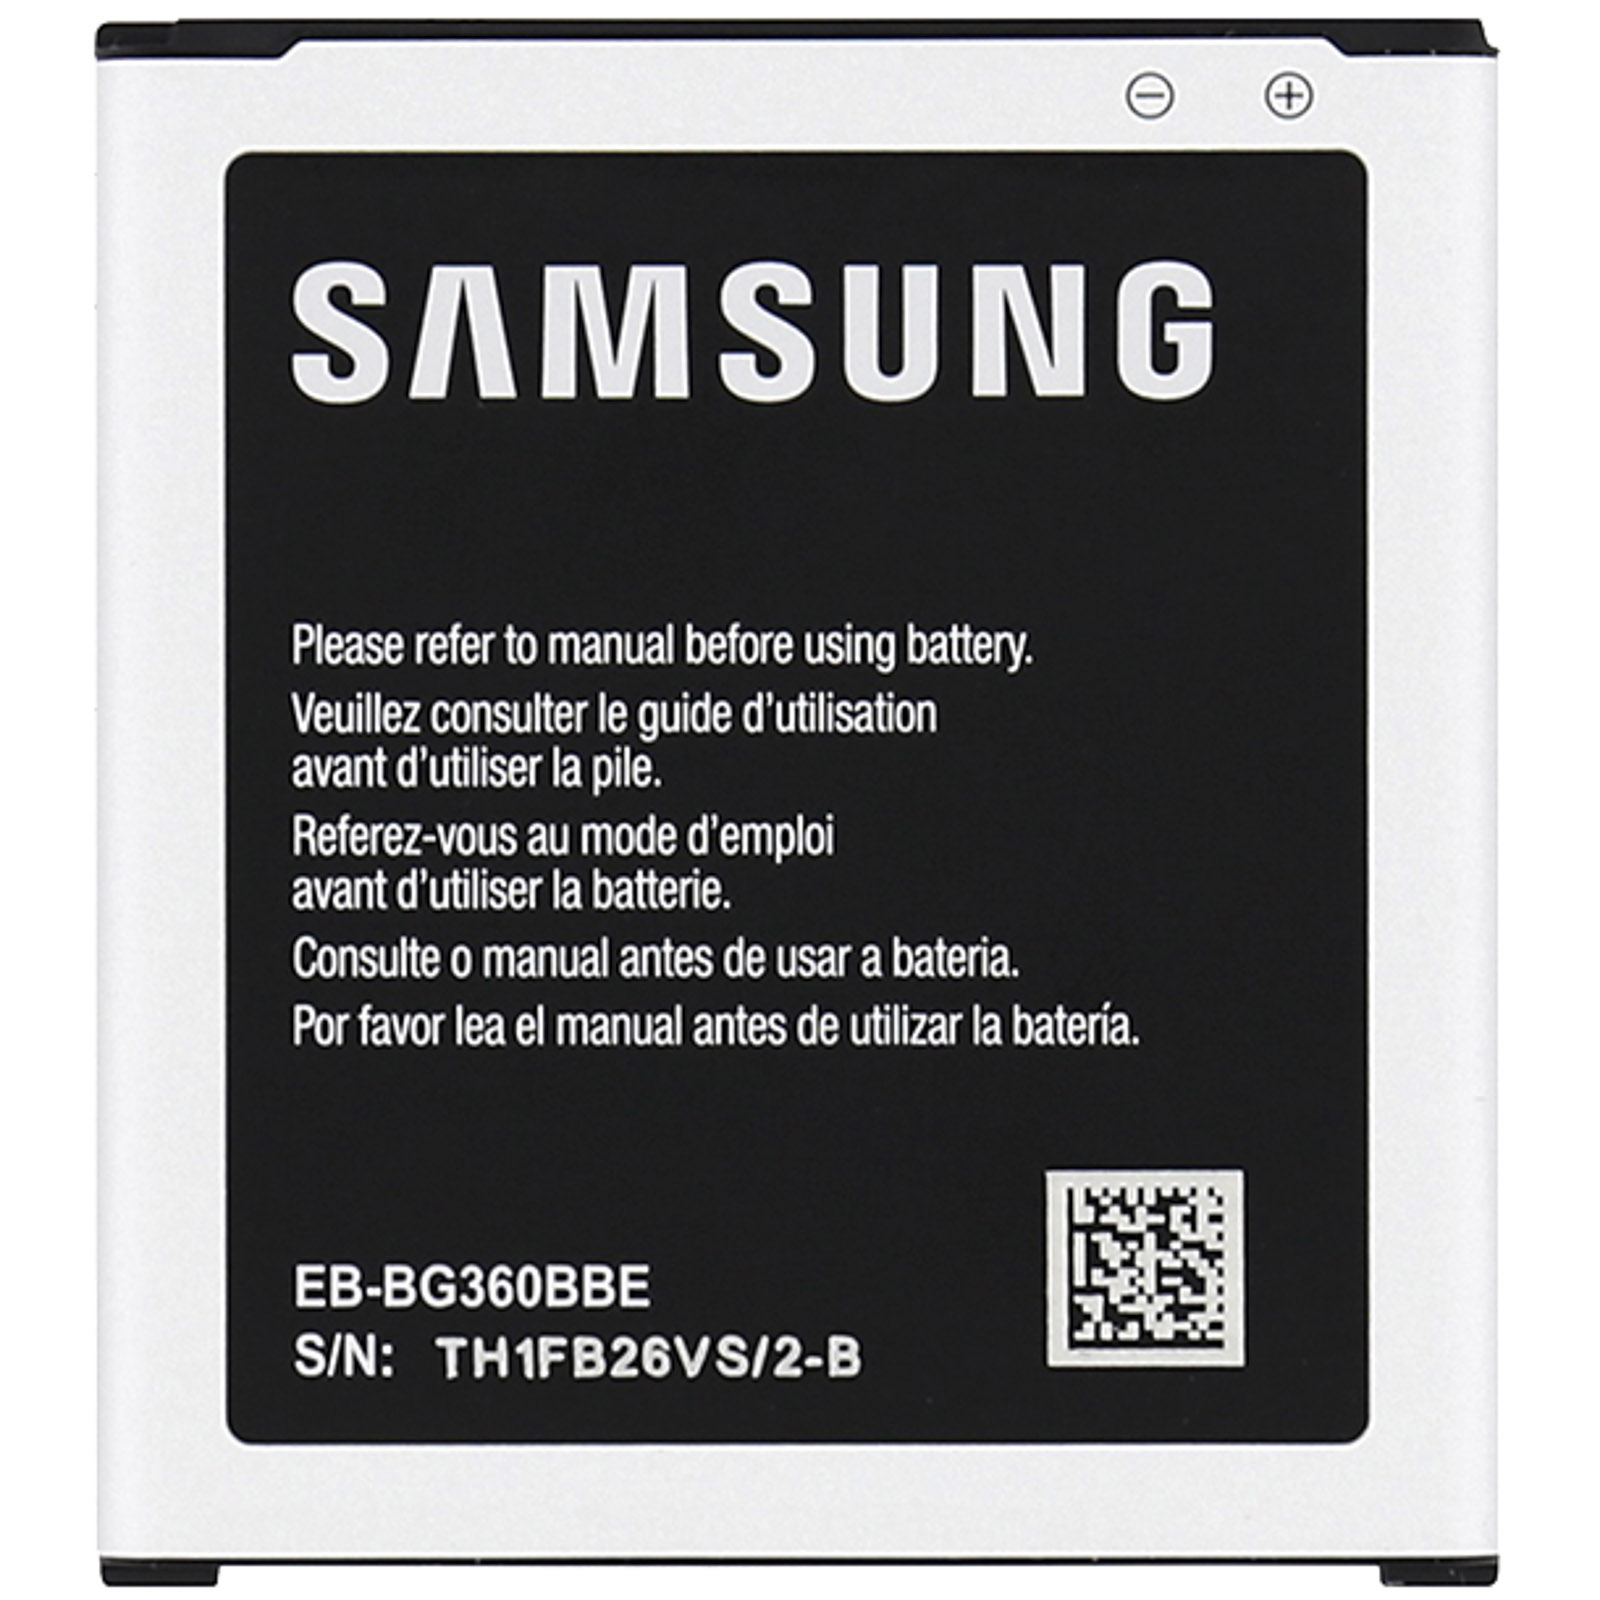 SAMSUNG Handy Akku Original Akkus Samsung Core Prime G360 Eb-Bg360 G361F Galaxy EB-BG360BBE 2000Mah